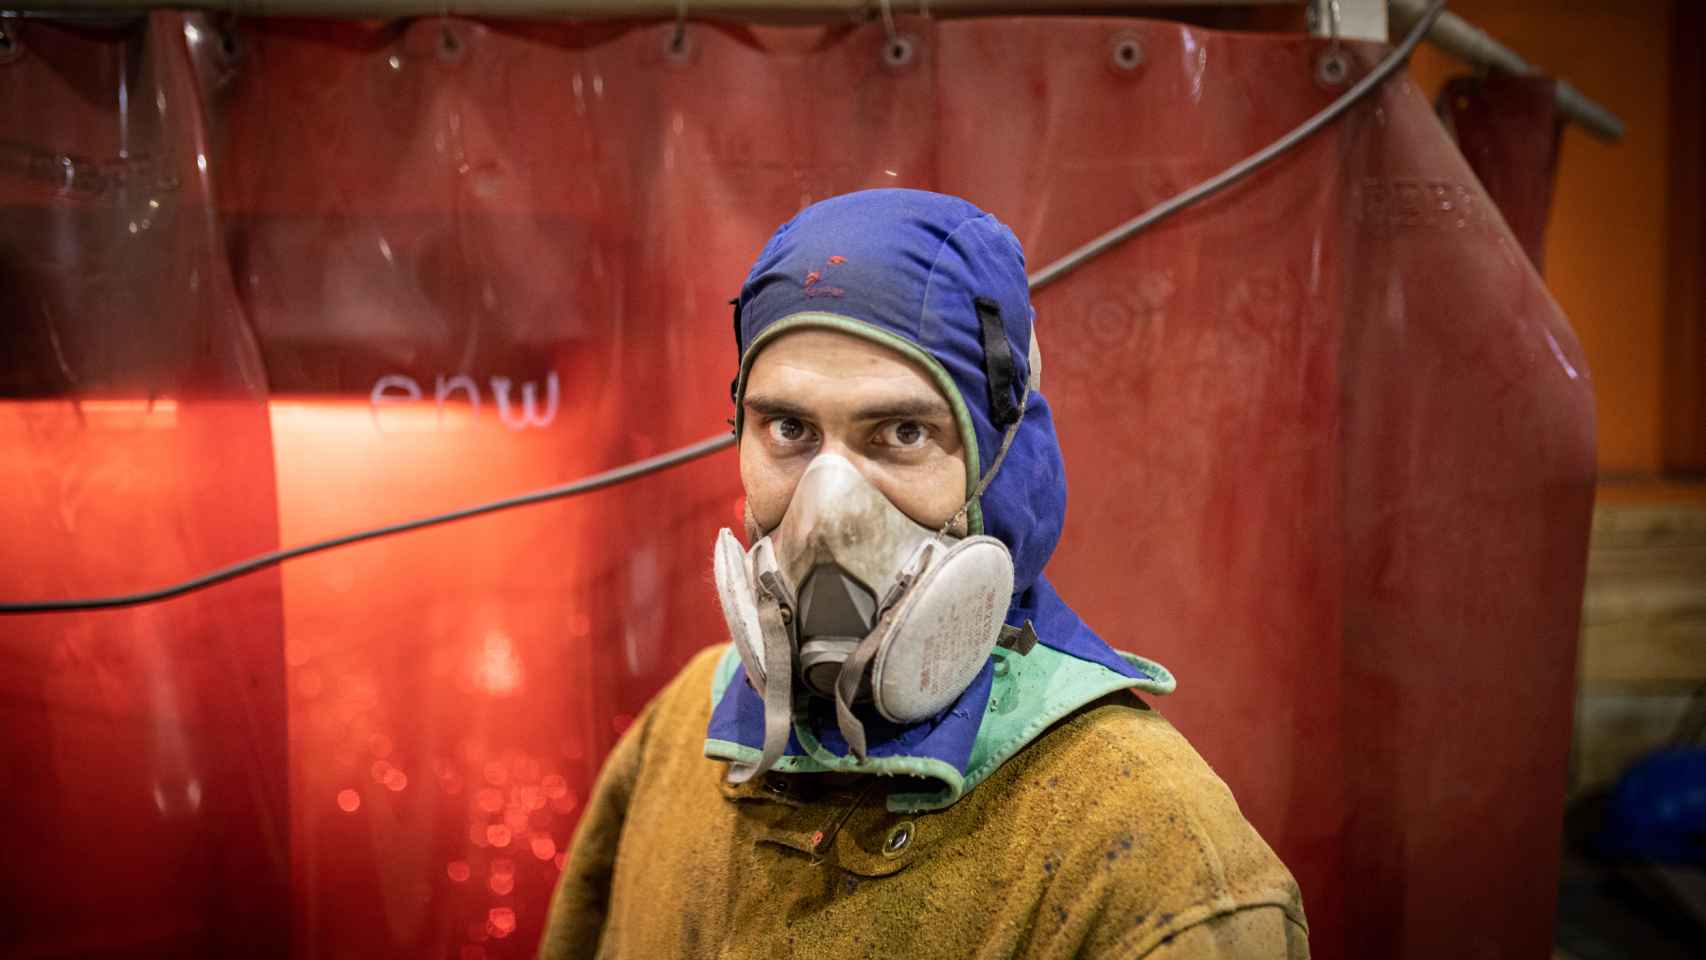 Las medidas de seguridad son estrictas en el astillero. Retrato de un operario con máscara antipolvo.